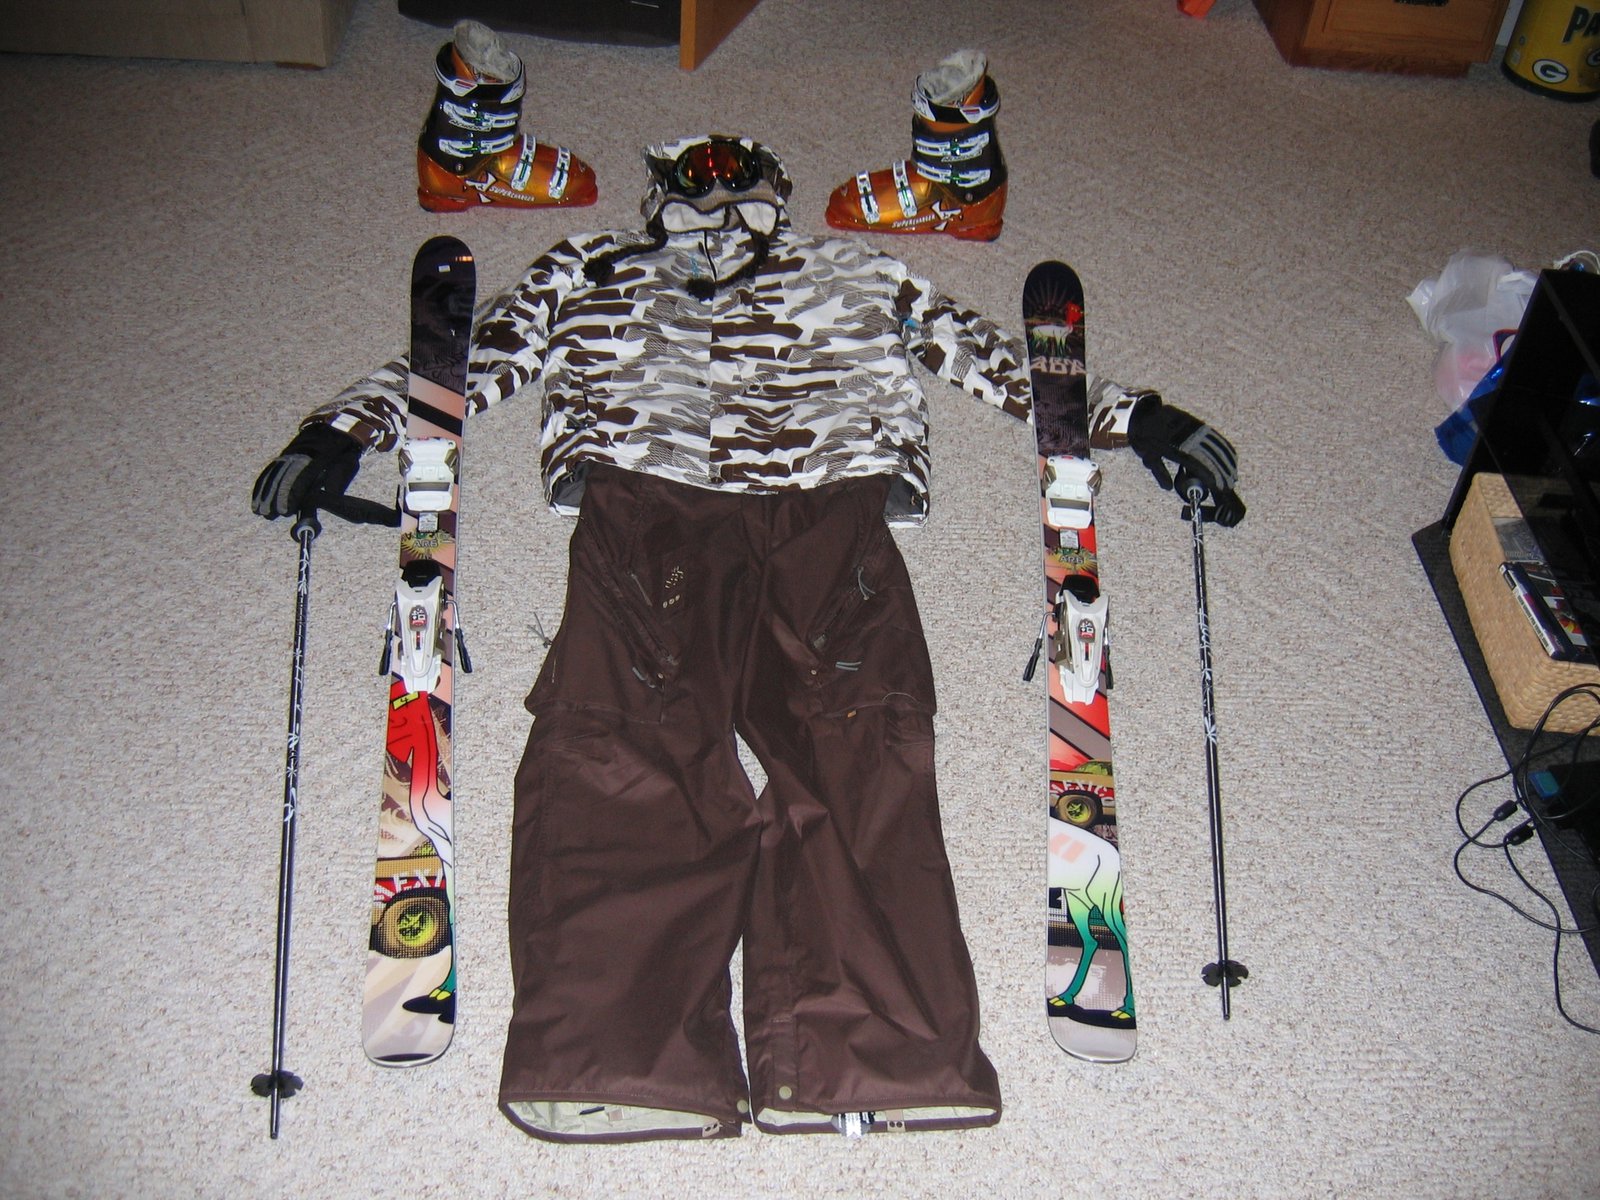 My 07-08 Ski setup